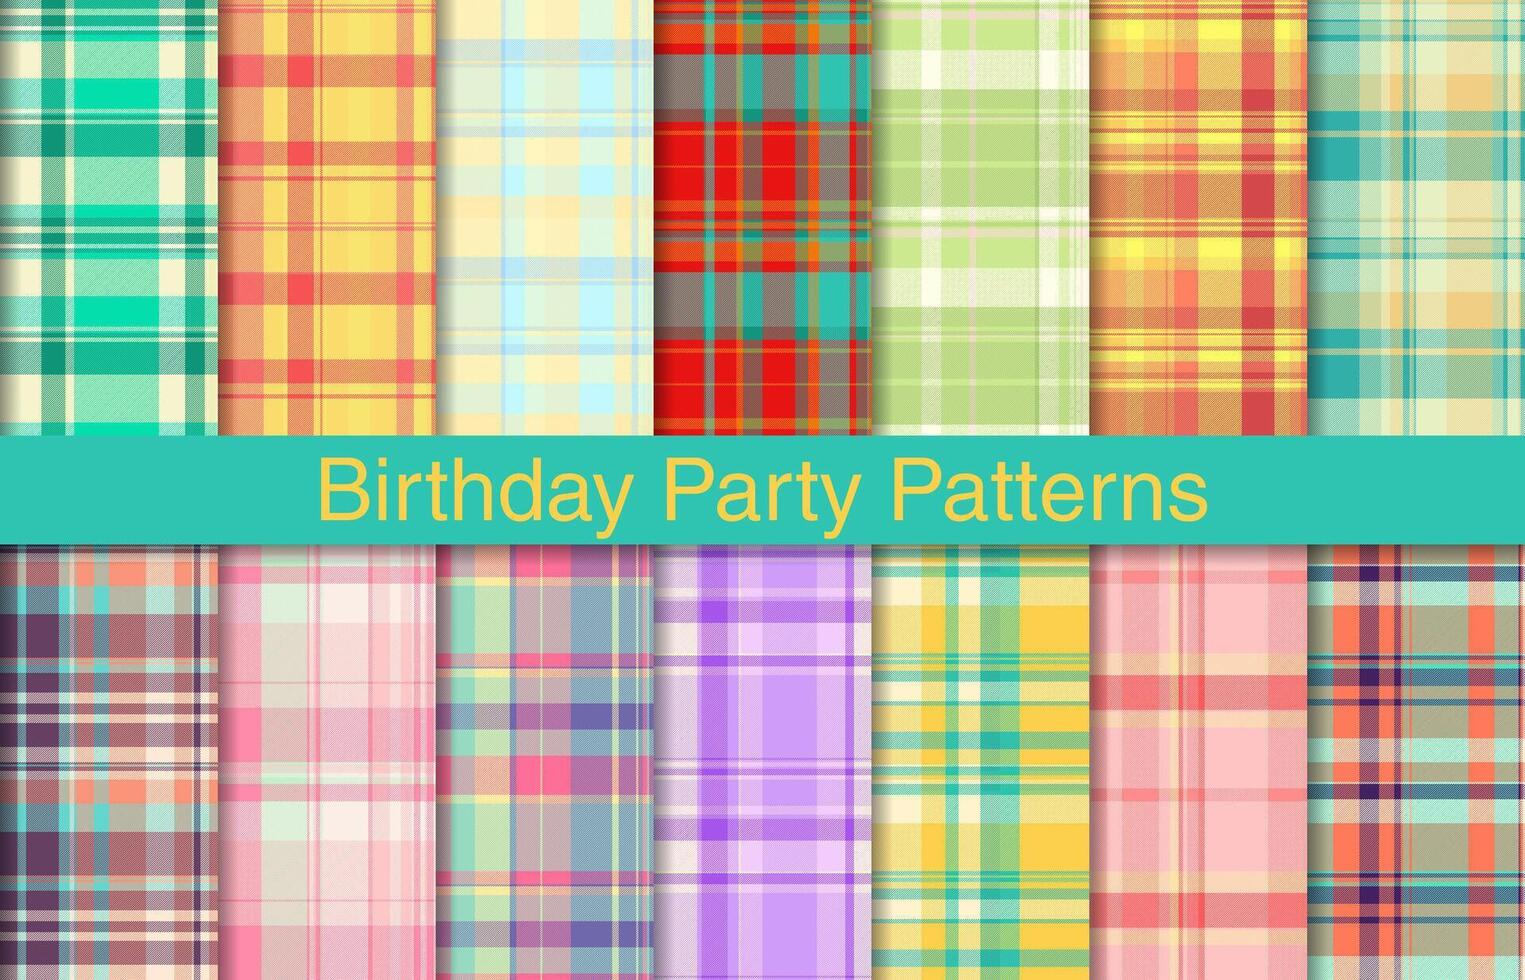 födelsedag pläd buntar, textil- design, rutig tyg mönster för skjorta, klänning, kostym, omslag papper skriva ut, inbjudan och gåva kort. vektor